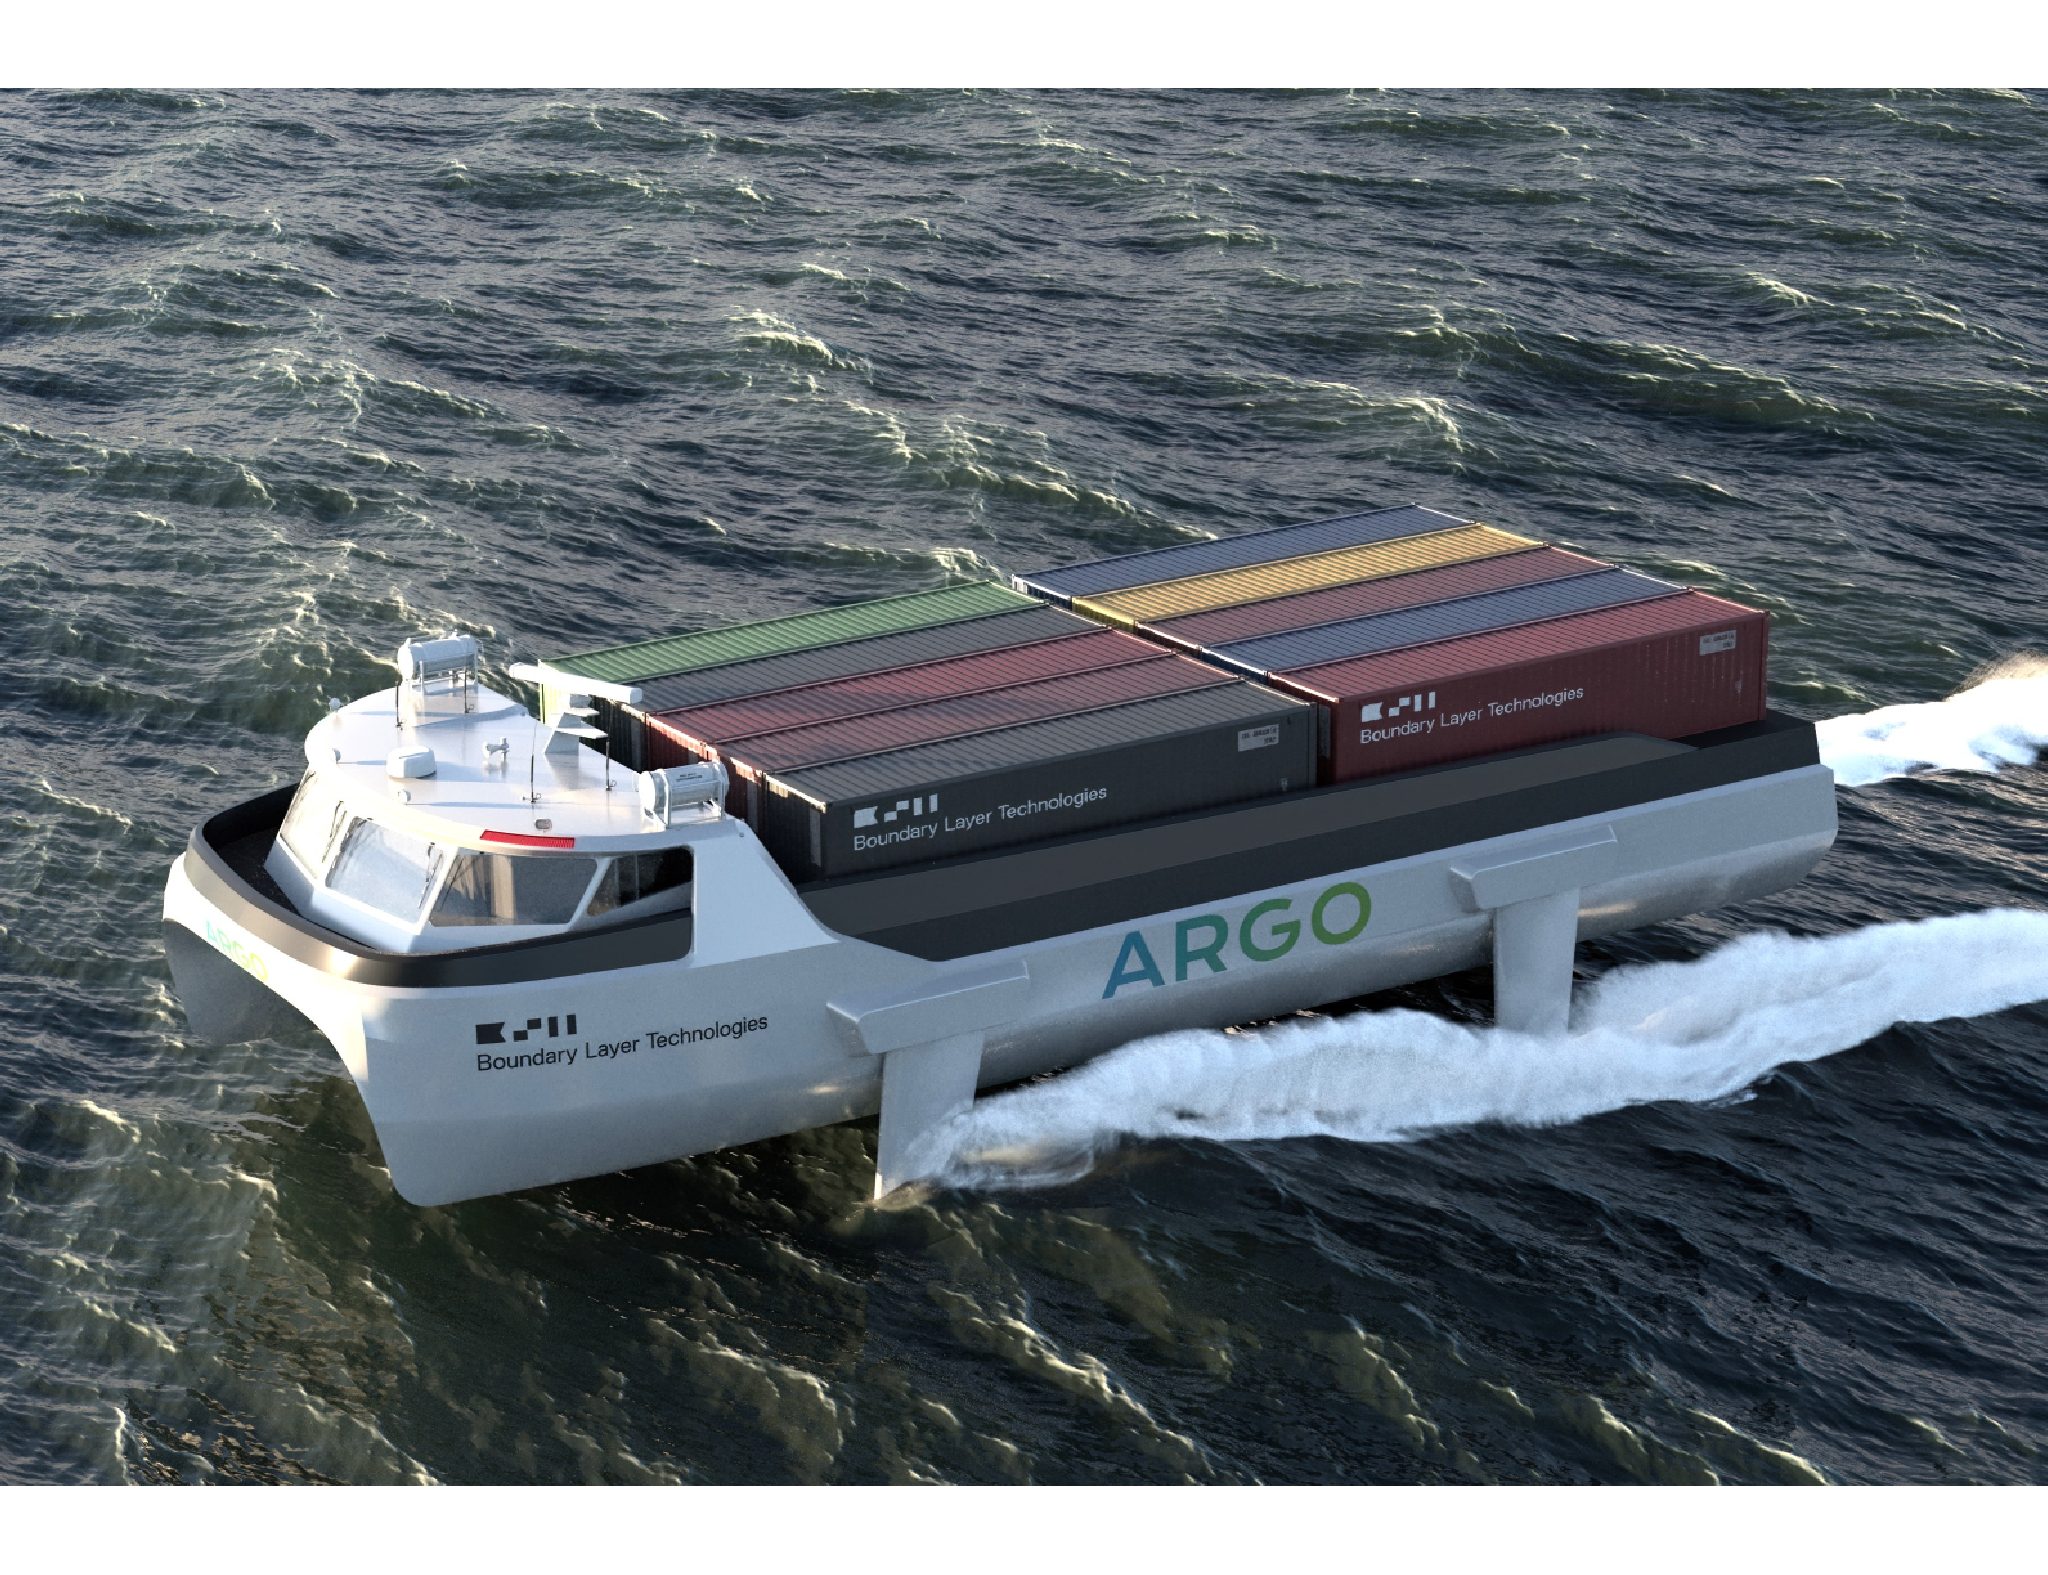 De waterstof aangedreven Argo neemt 20 teu of 200 ton mee (Illustraties Boundary Layer Technologies)